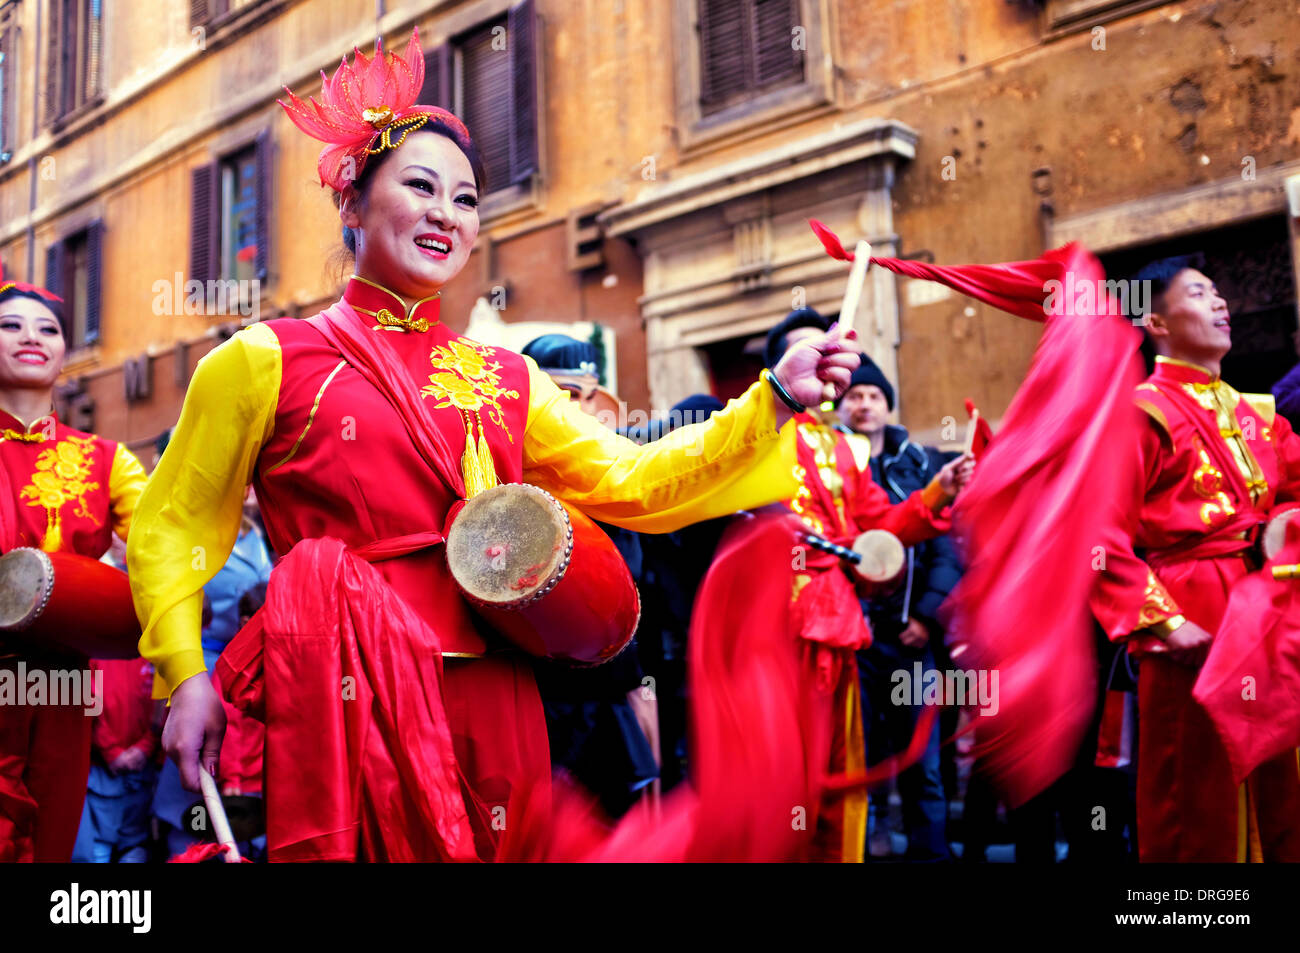 Rome, Italie 25 janvier 2014 Artistes Célébrez le Nouvel An chinois dans la Via del Corso. Selon le calendrier chinois, c'est l'année de l'horse Crédit : Fabrizio Troiani/Alamy Live News Banque D'Images